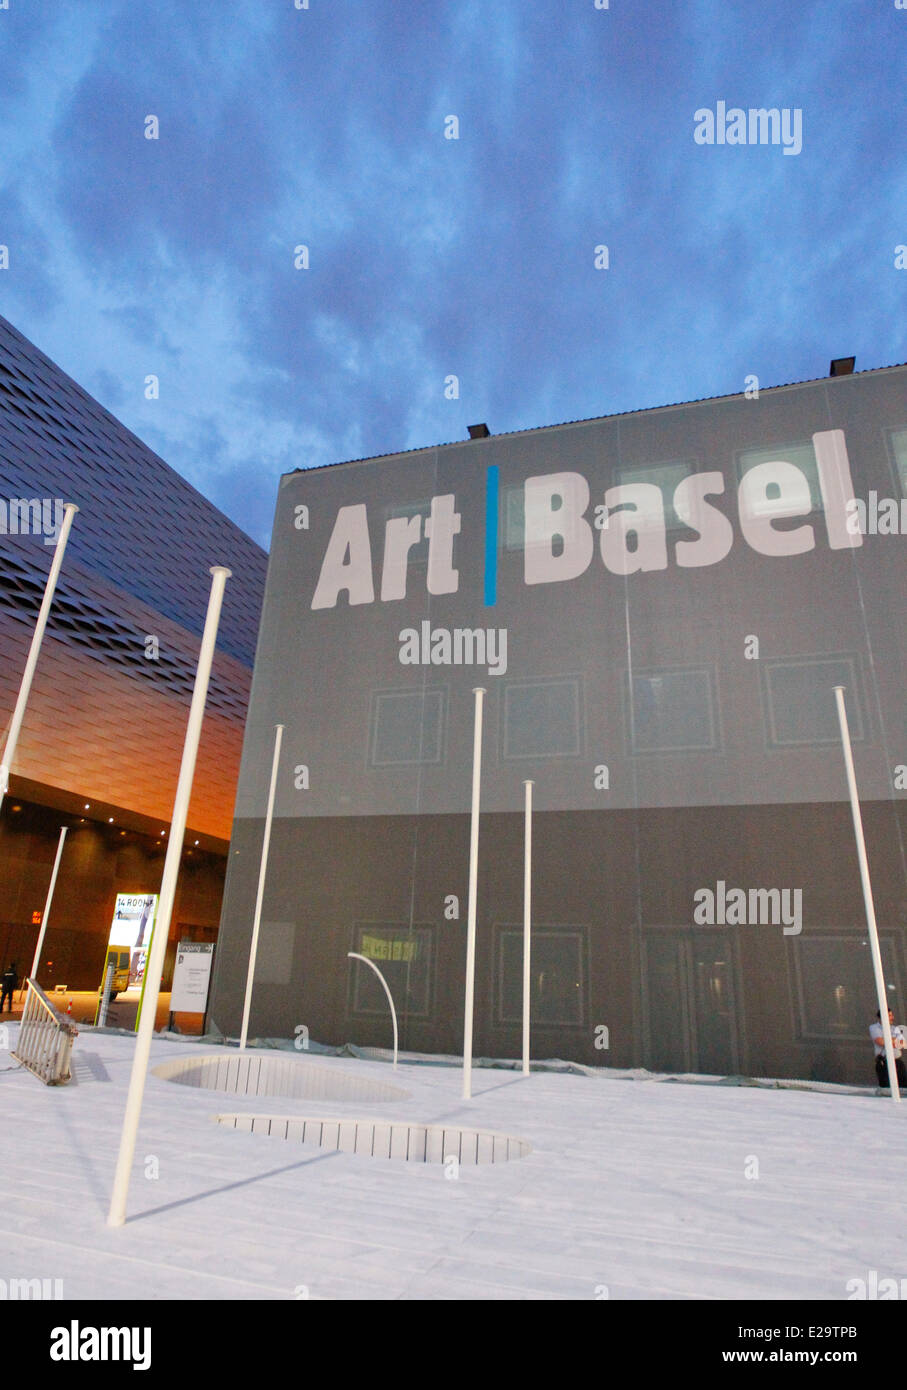 Bâle, Suisse - 16 juin 2014 : Art Basel 2014 Ouverture d'avant, la plus grande foire d'art au monde du 17 au 22 juin 2014 Banque D'Images